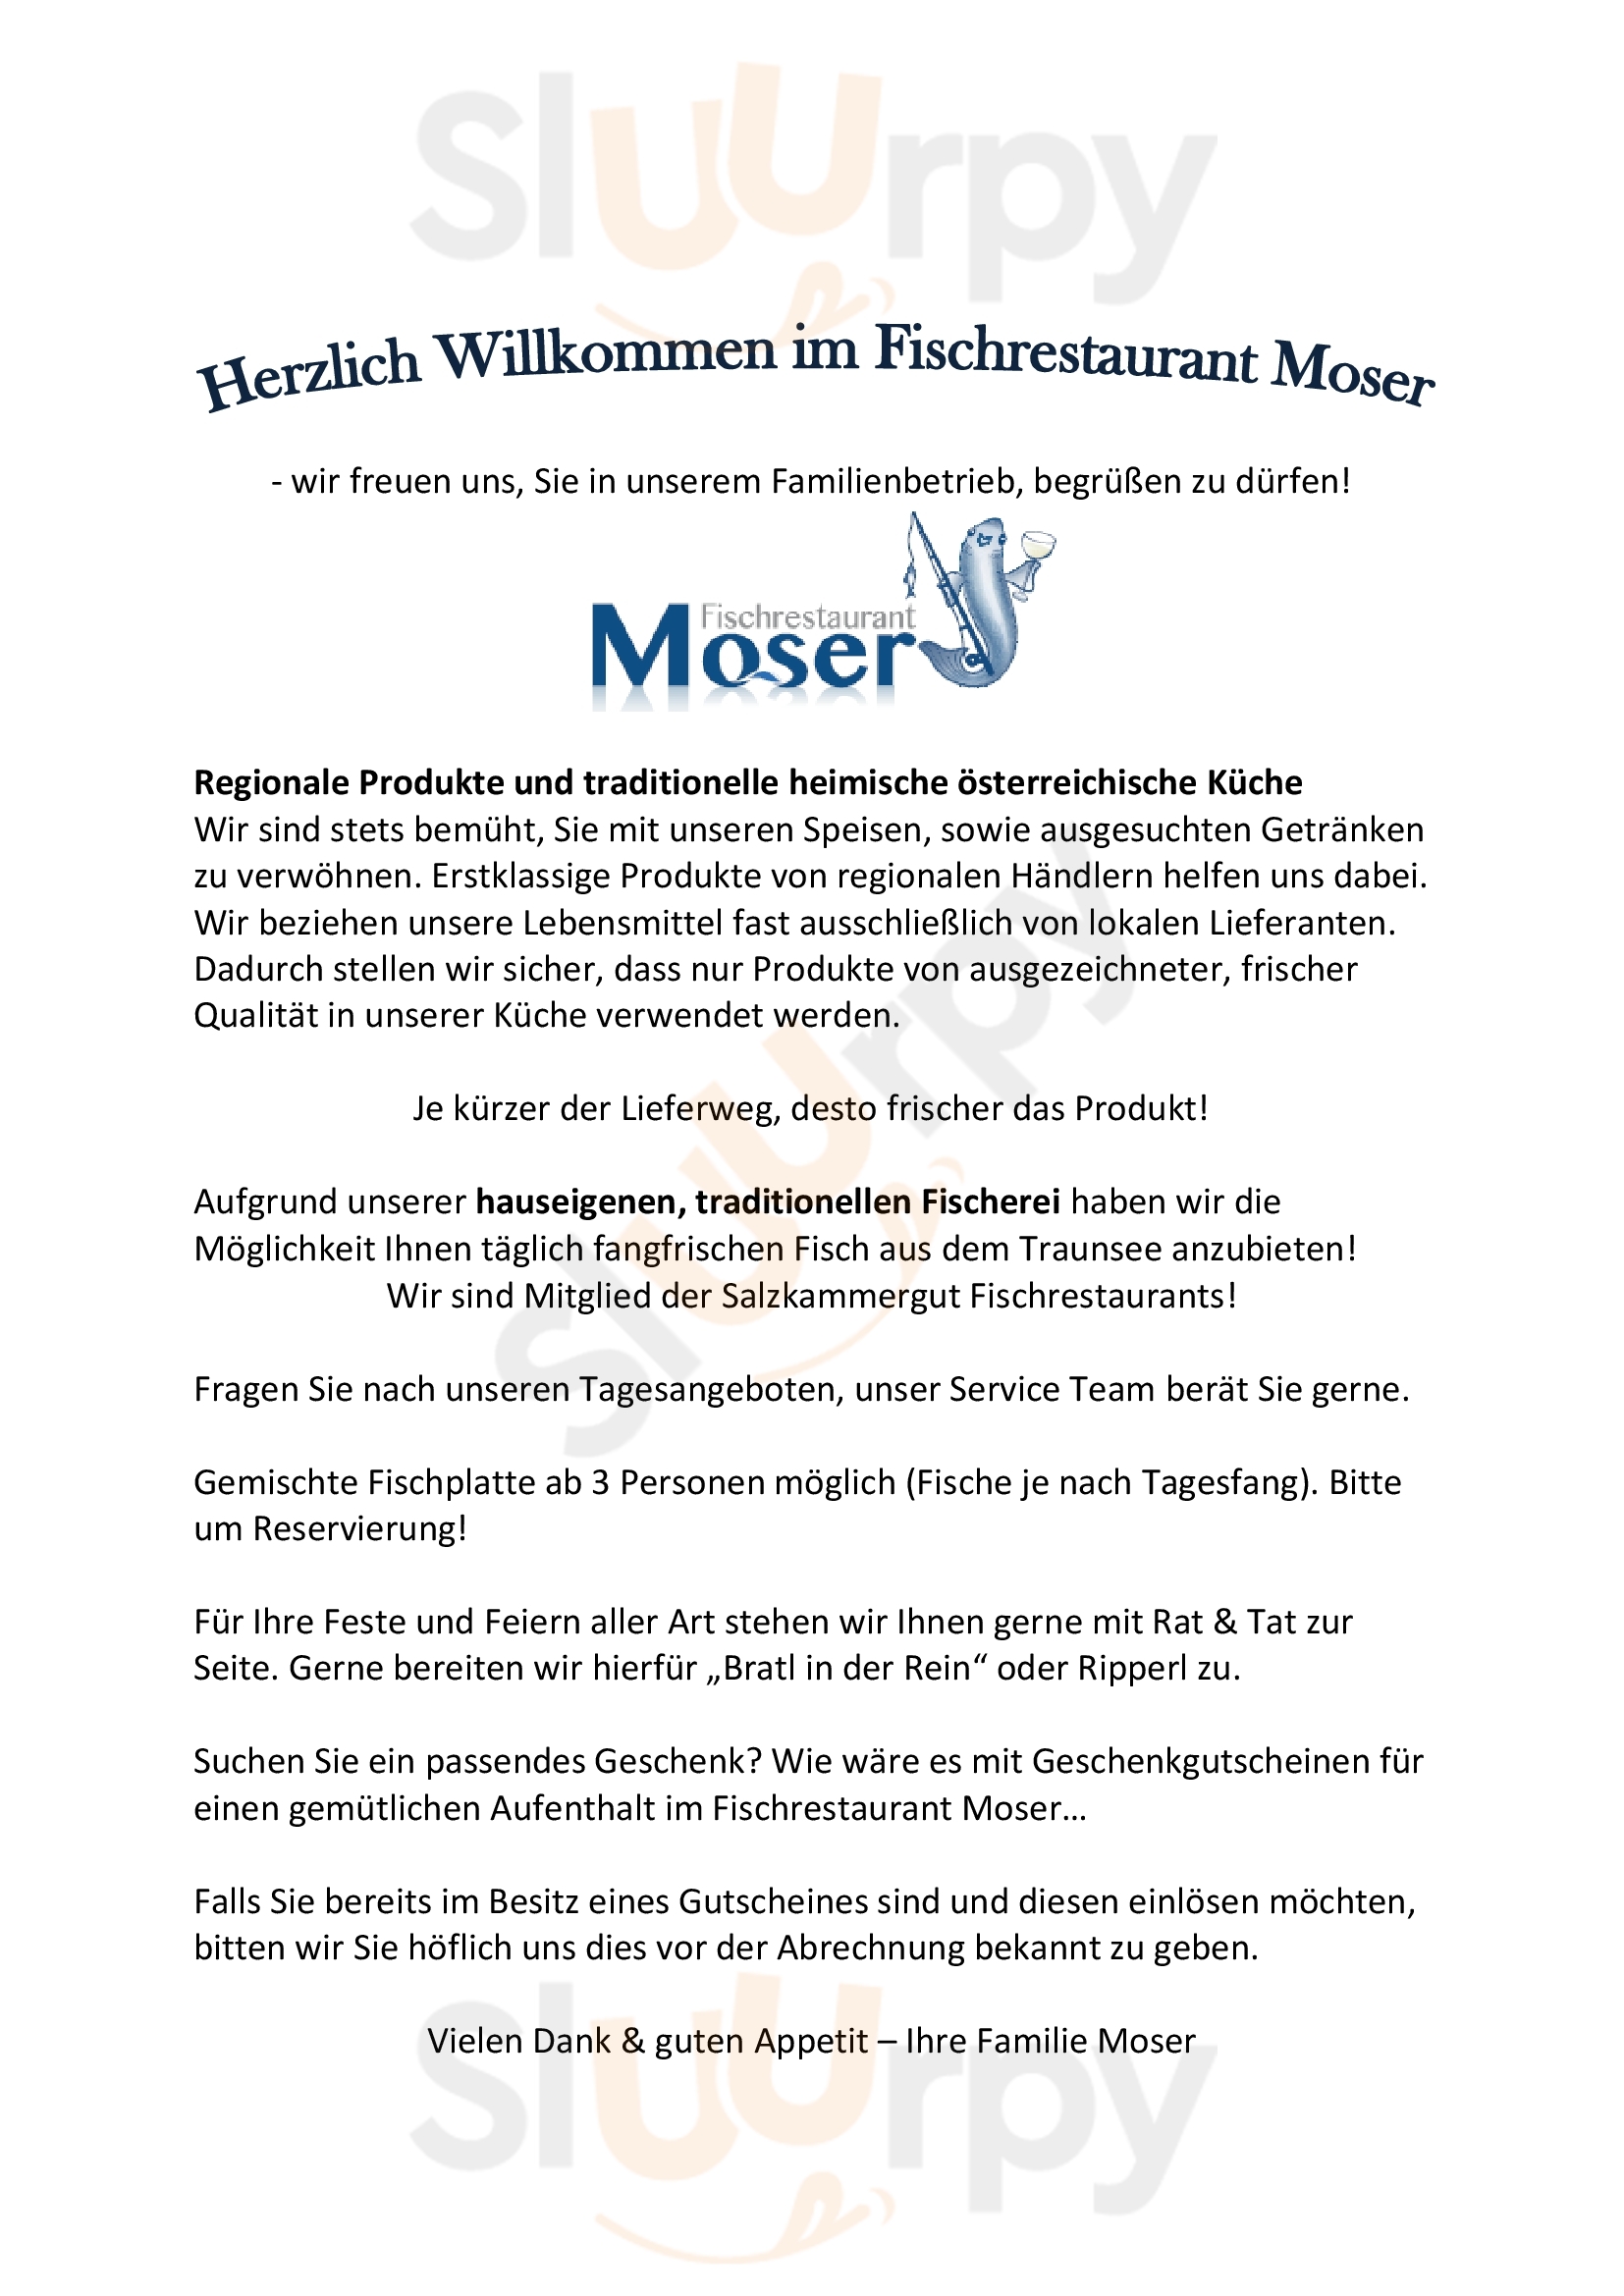 Fischrestaurant Moser Altmünster Menu - 1